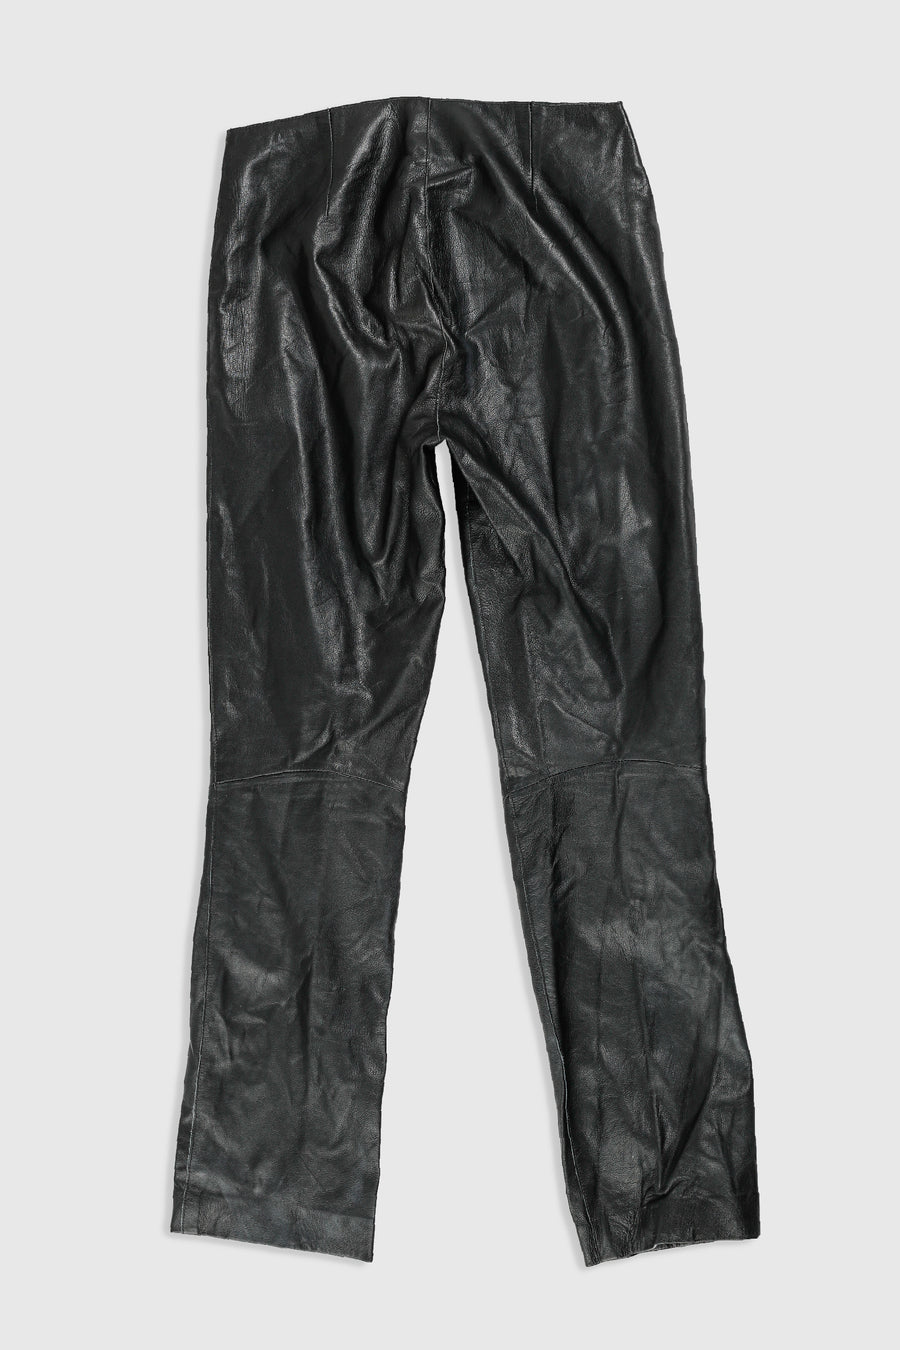 Vintage Leather Pants - Women's S